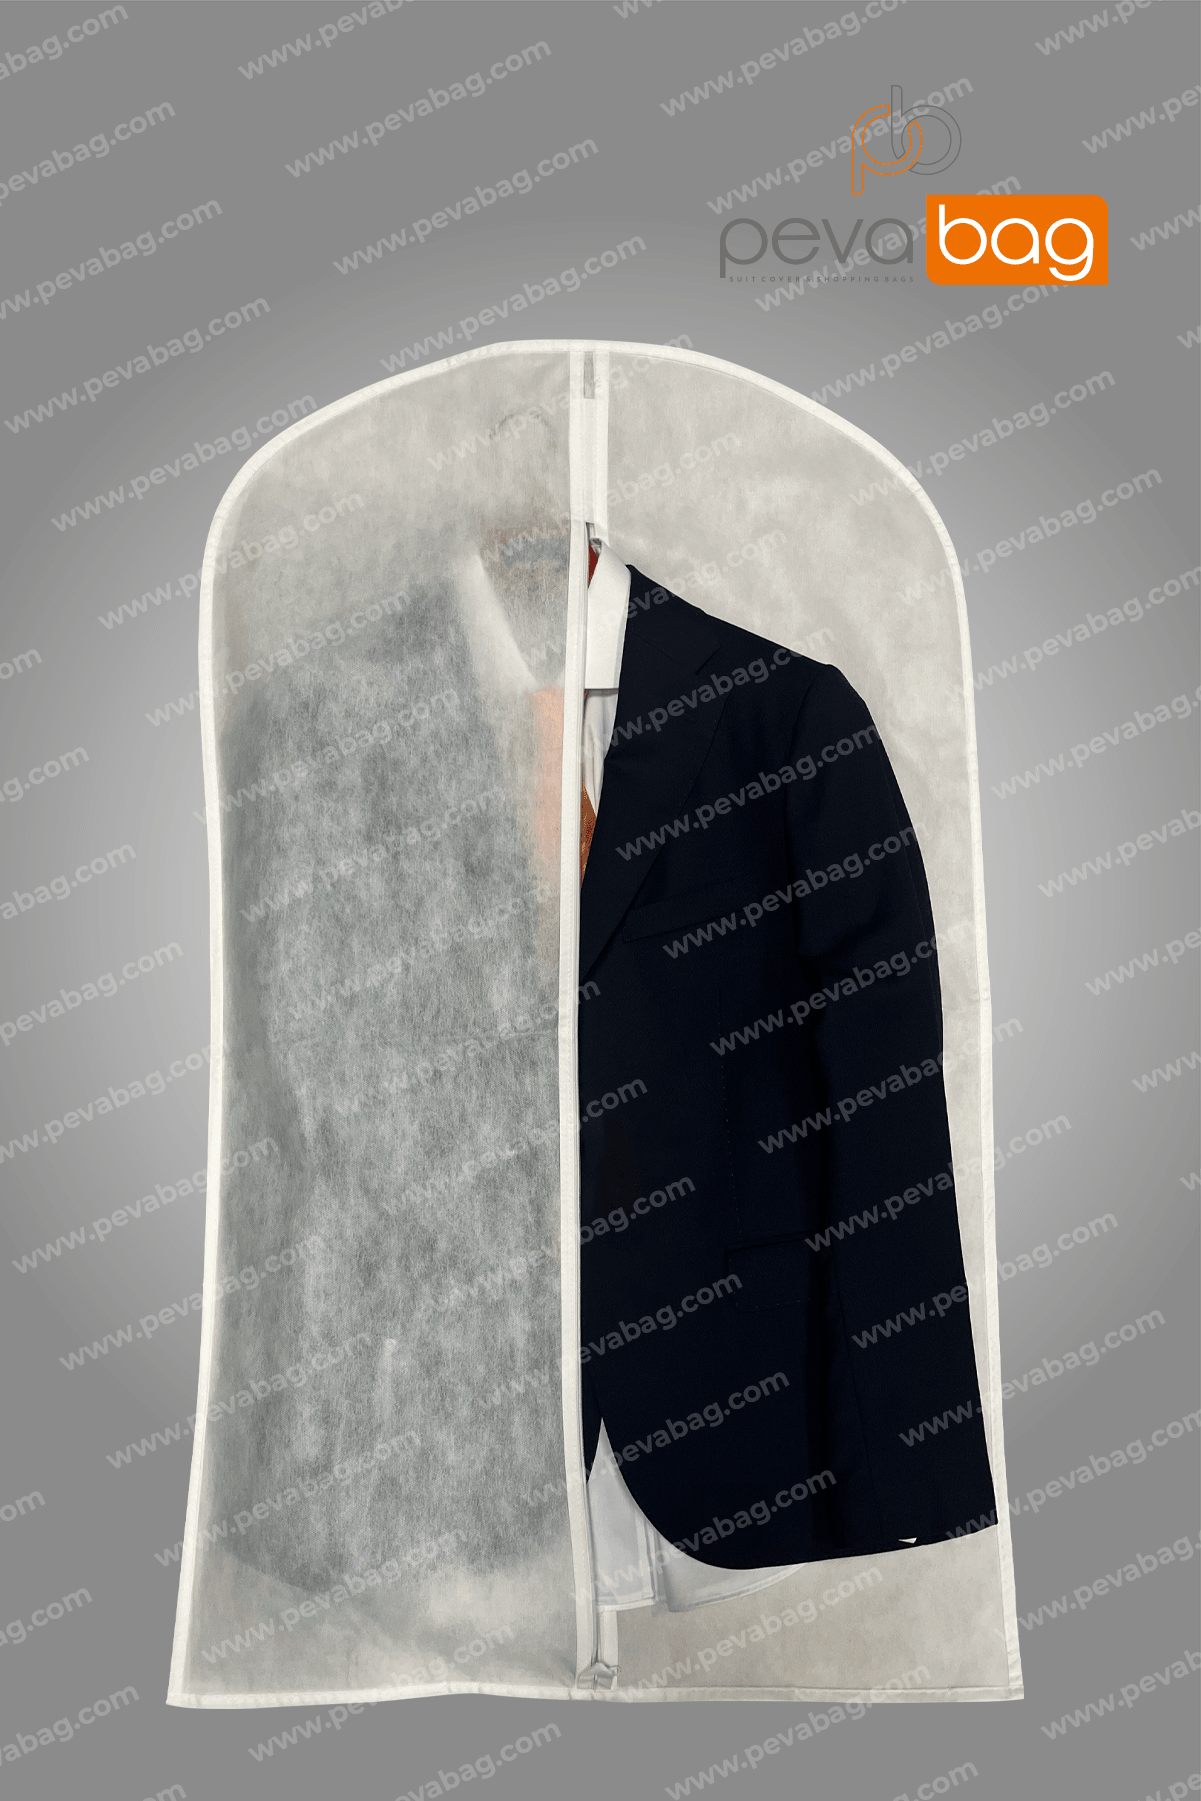 Beyaz Gamboç - Ceket - Kaban - Takım Elbise Kılıfı 62x102 Cm / 5 Adet